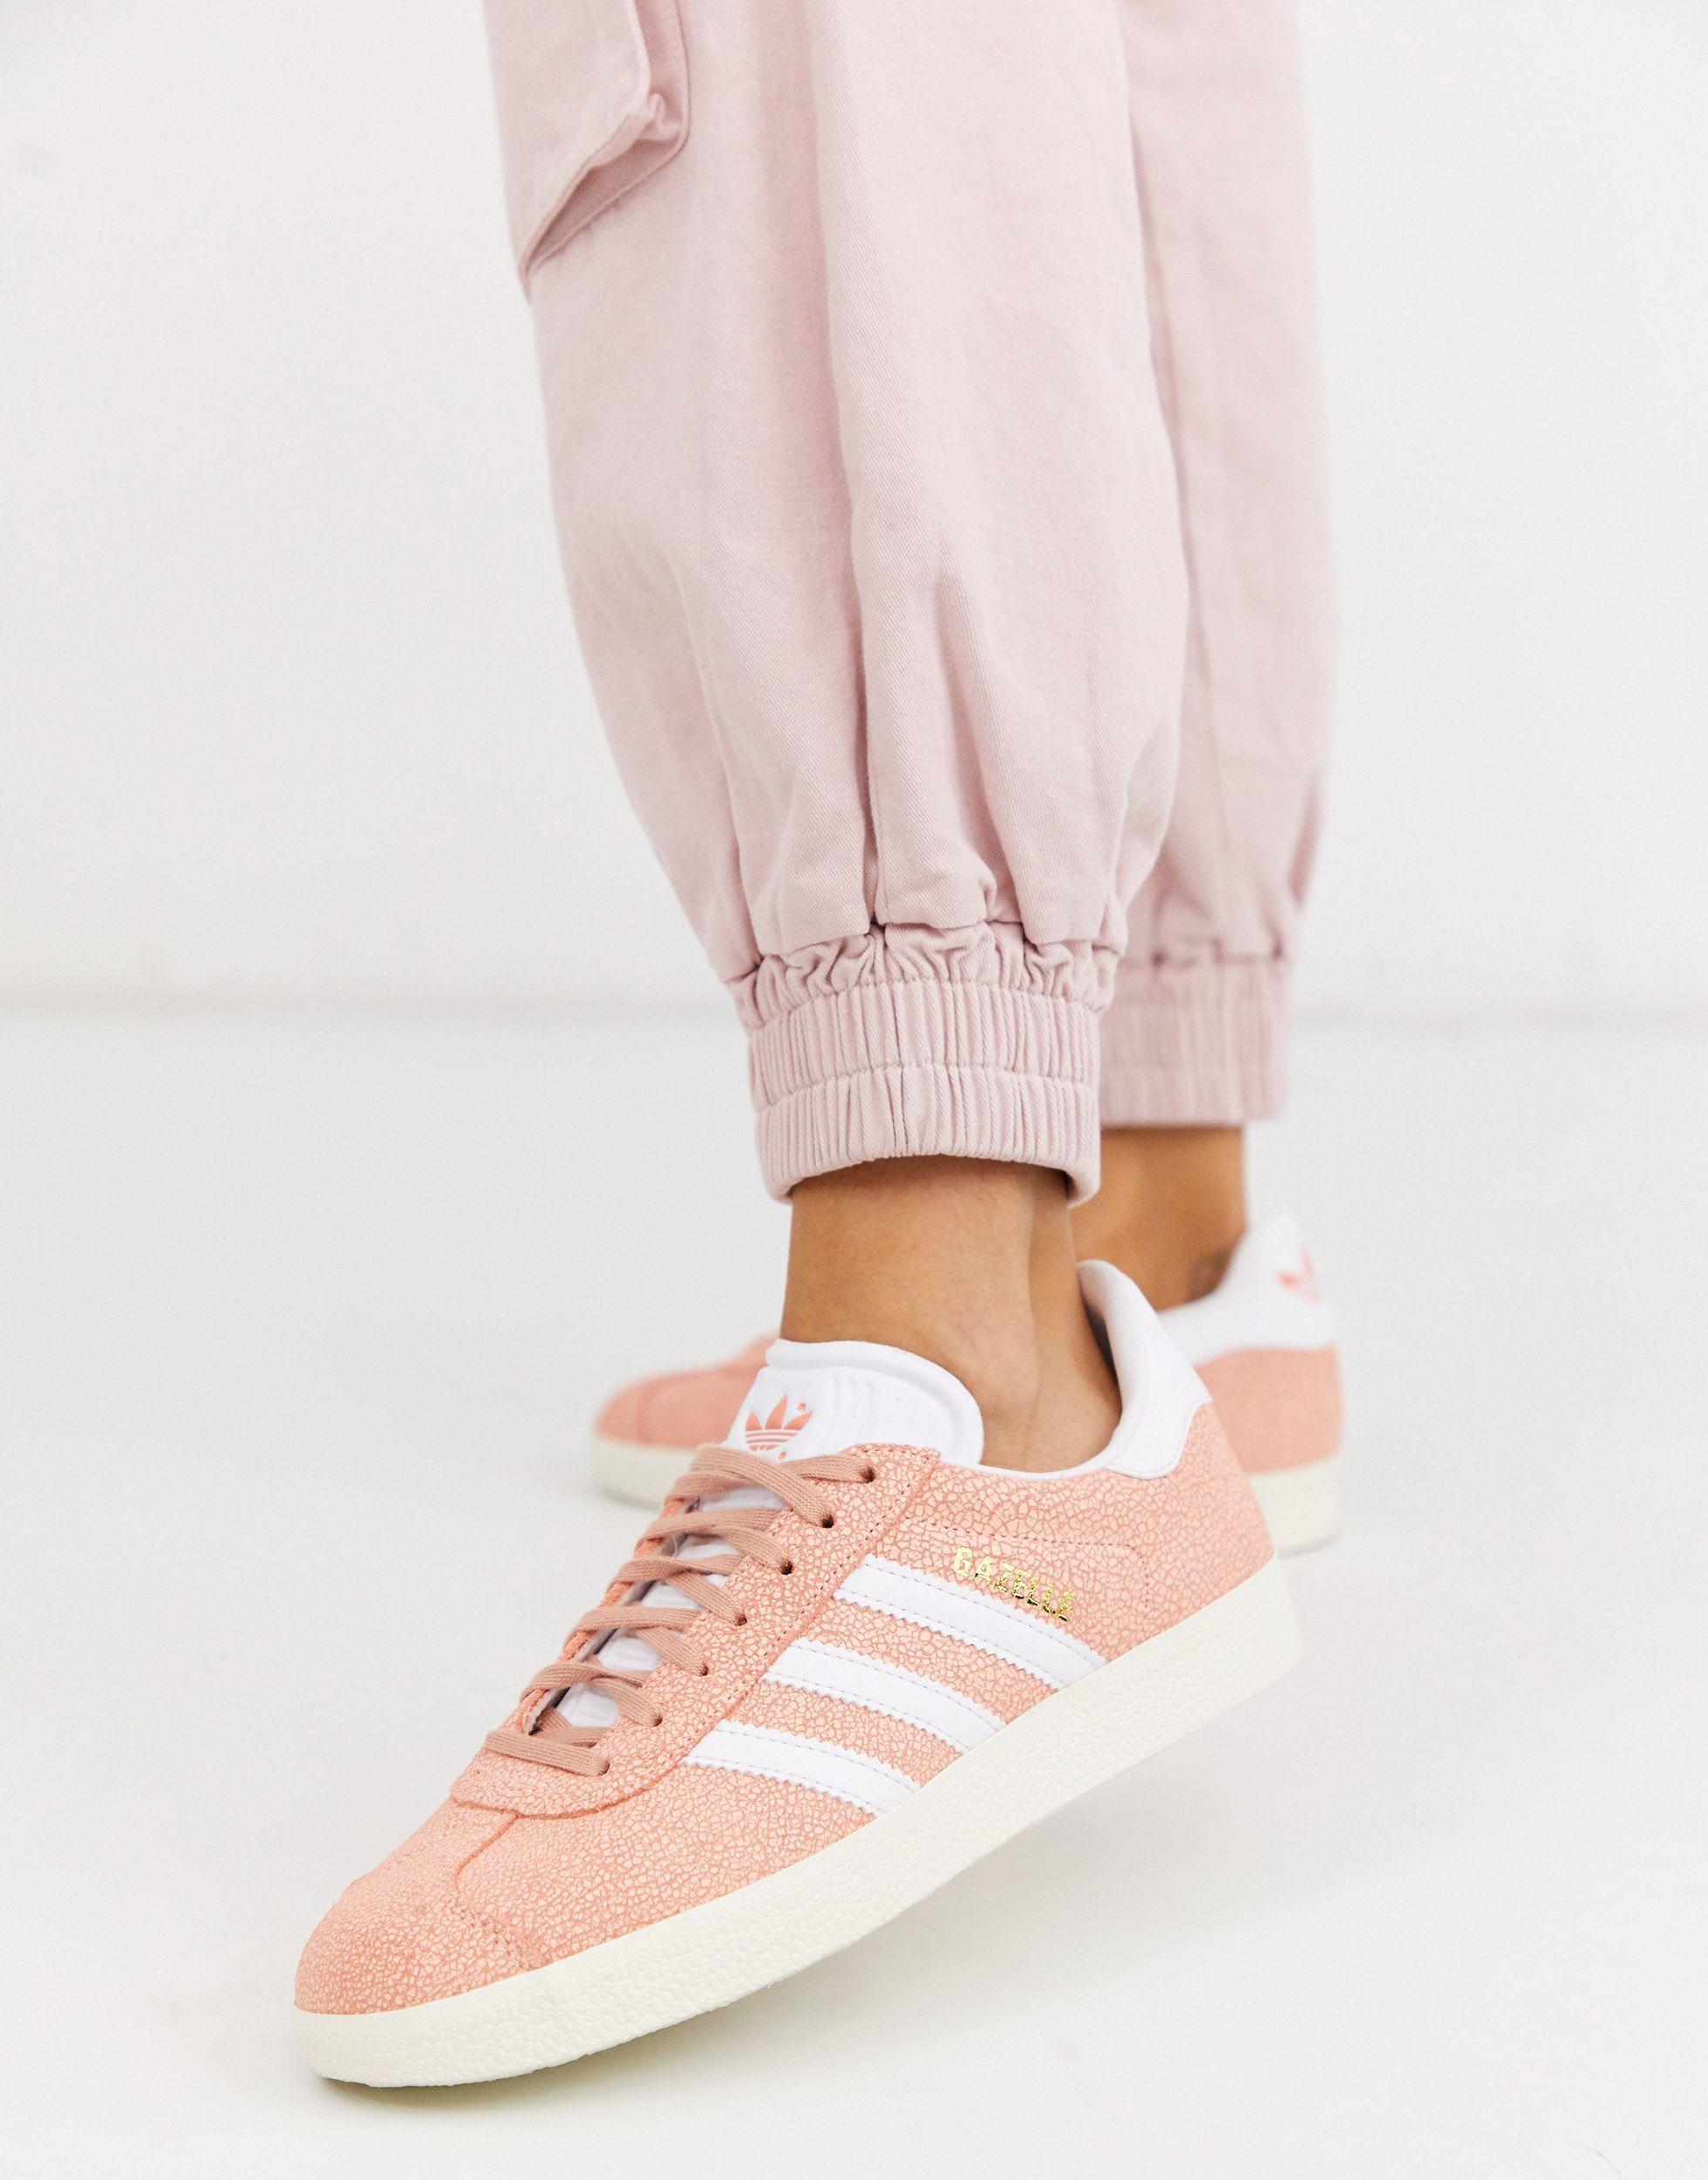 adidas Originals Suede Gazelle in Pink/White (Pink) | Lyst